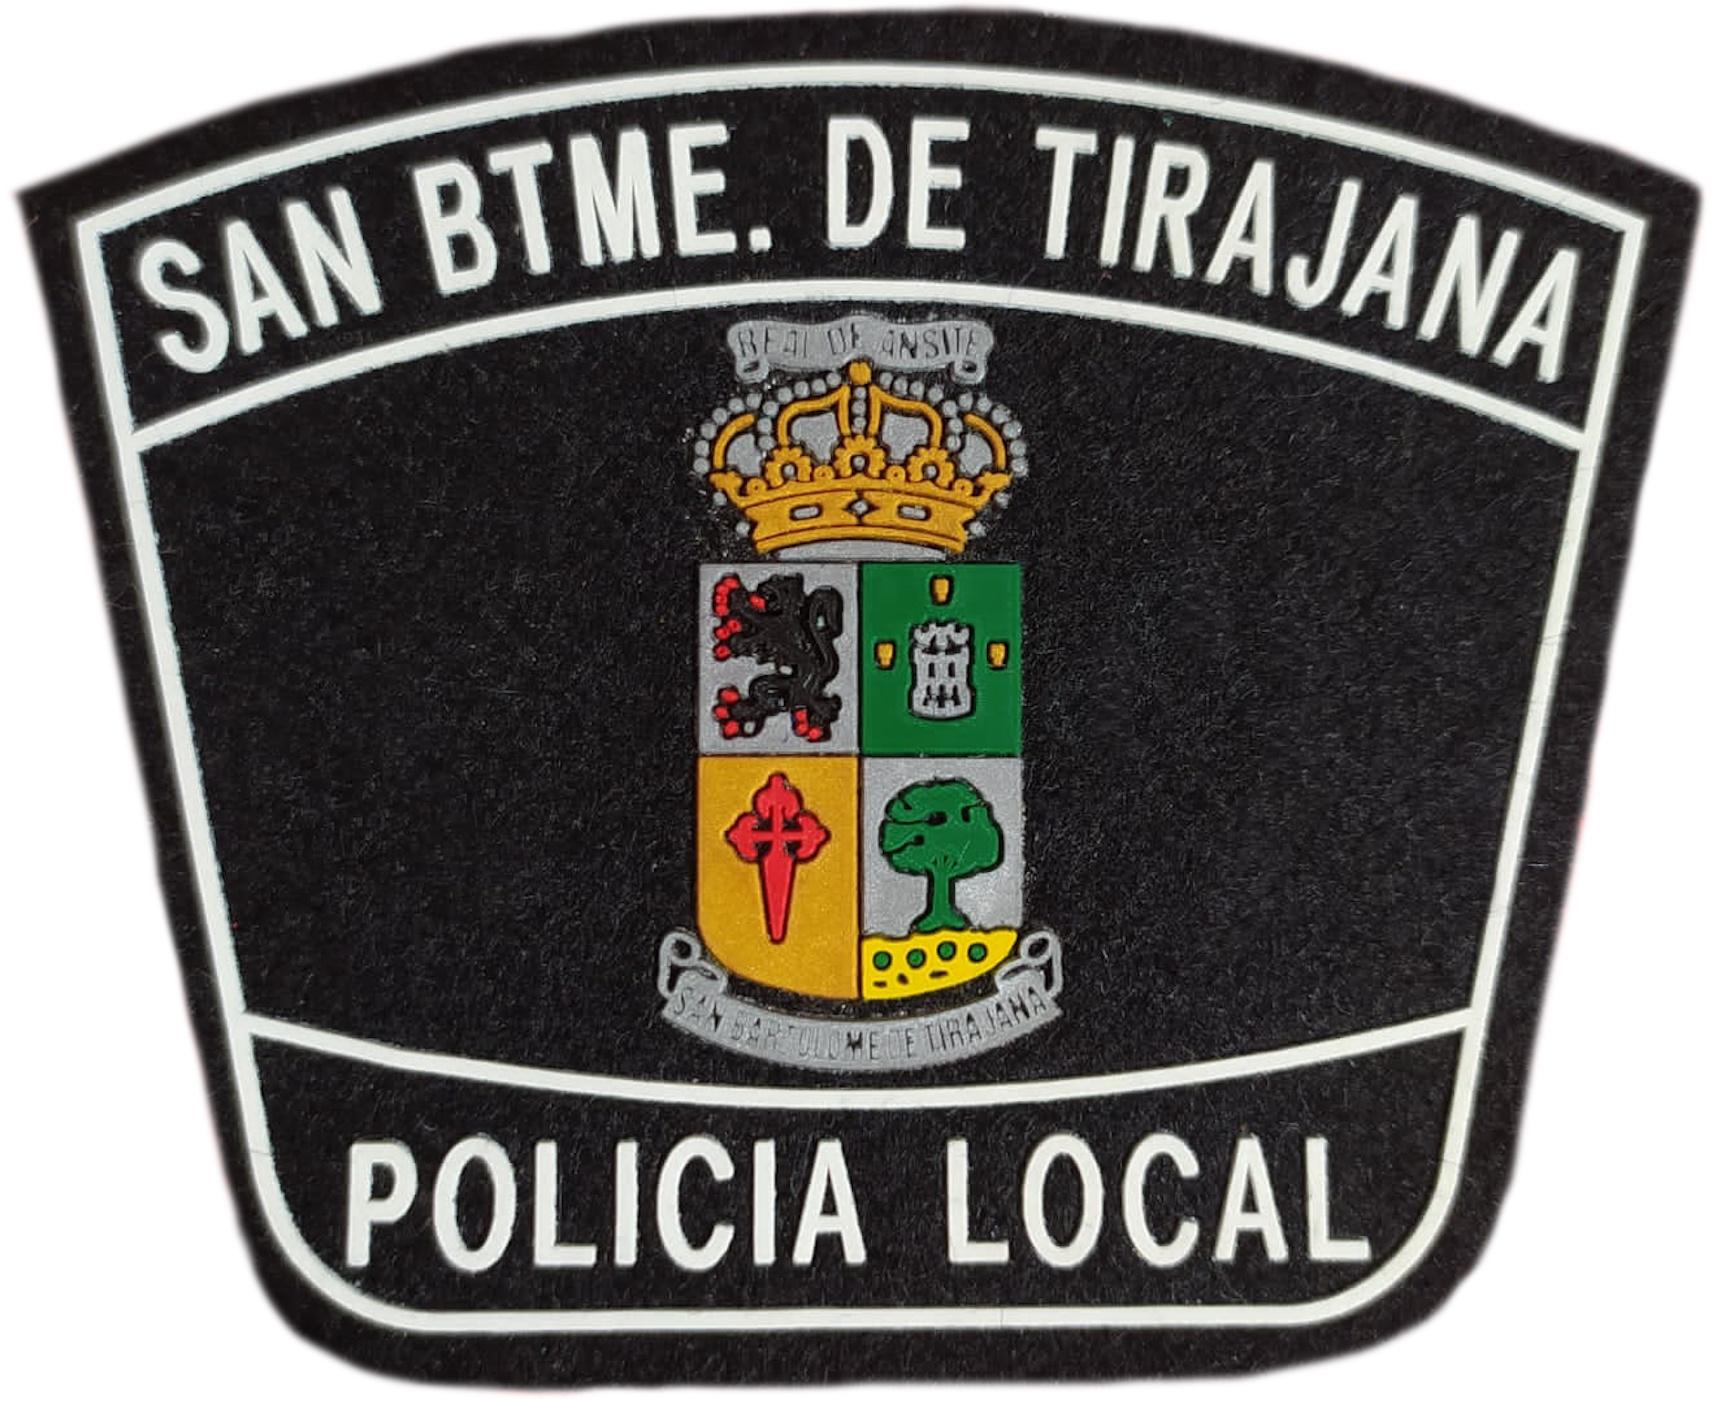 Policía Local San Bartolomé de Tirajana Canarias parche insignia emblema distintivo Police Dept